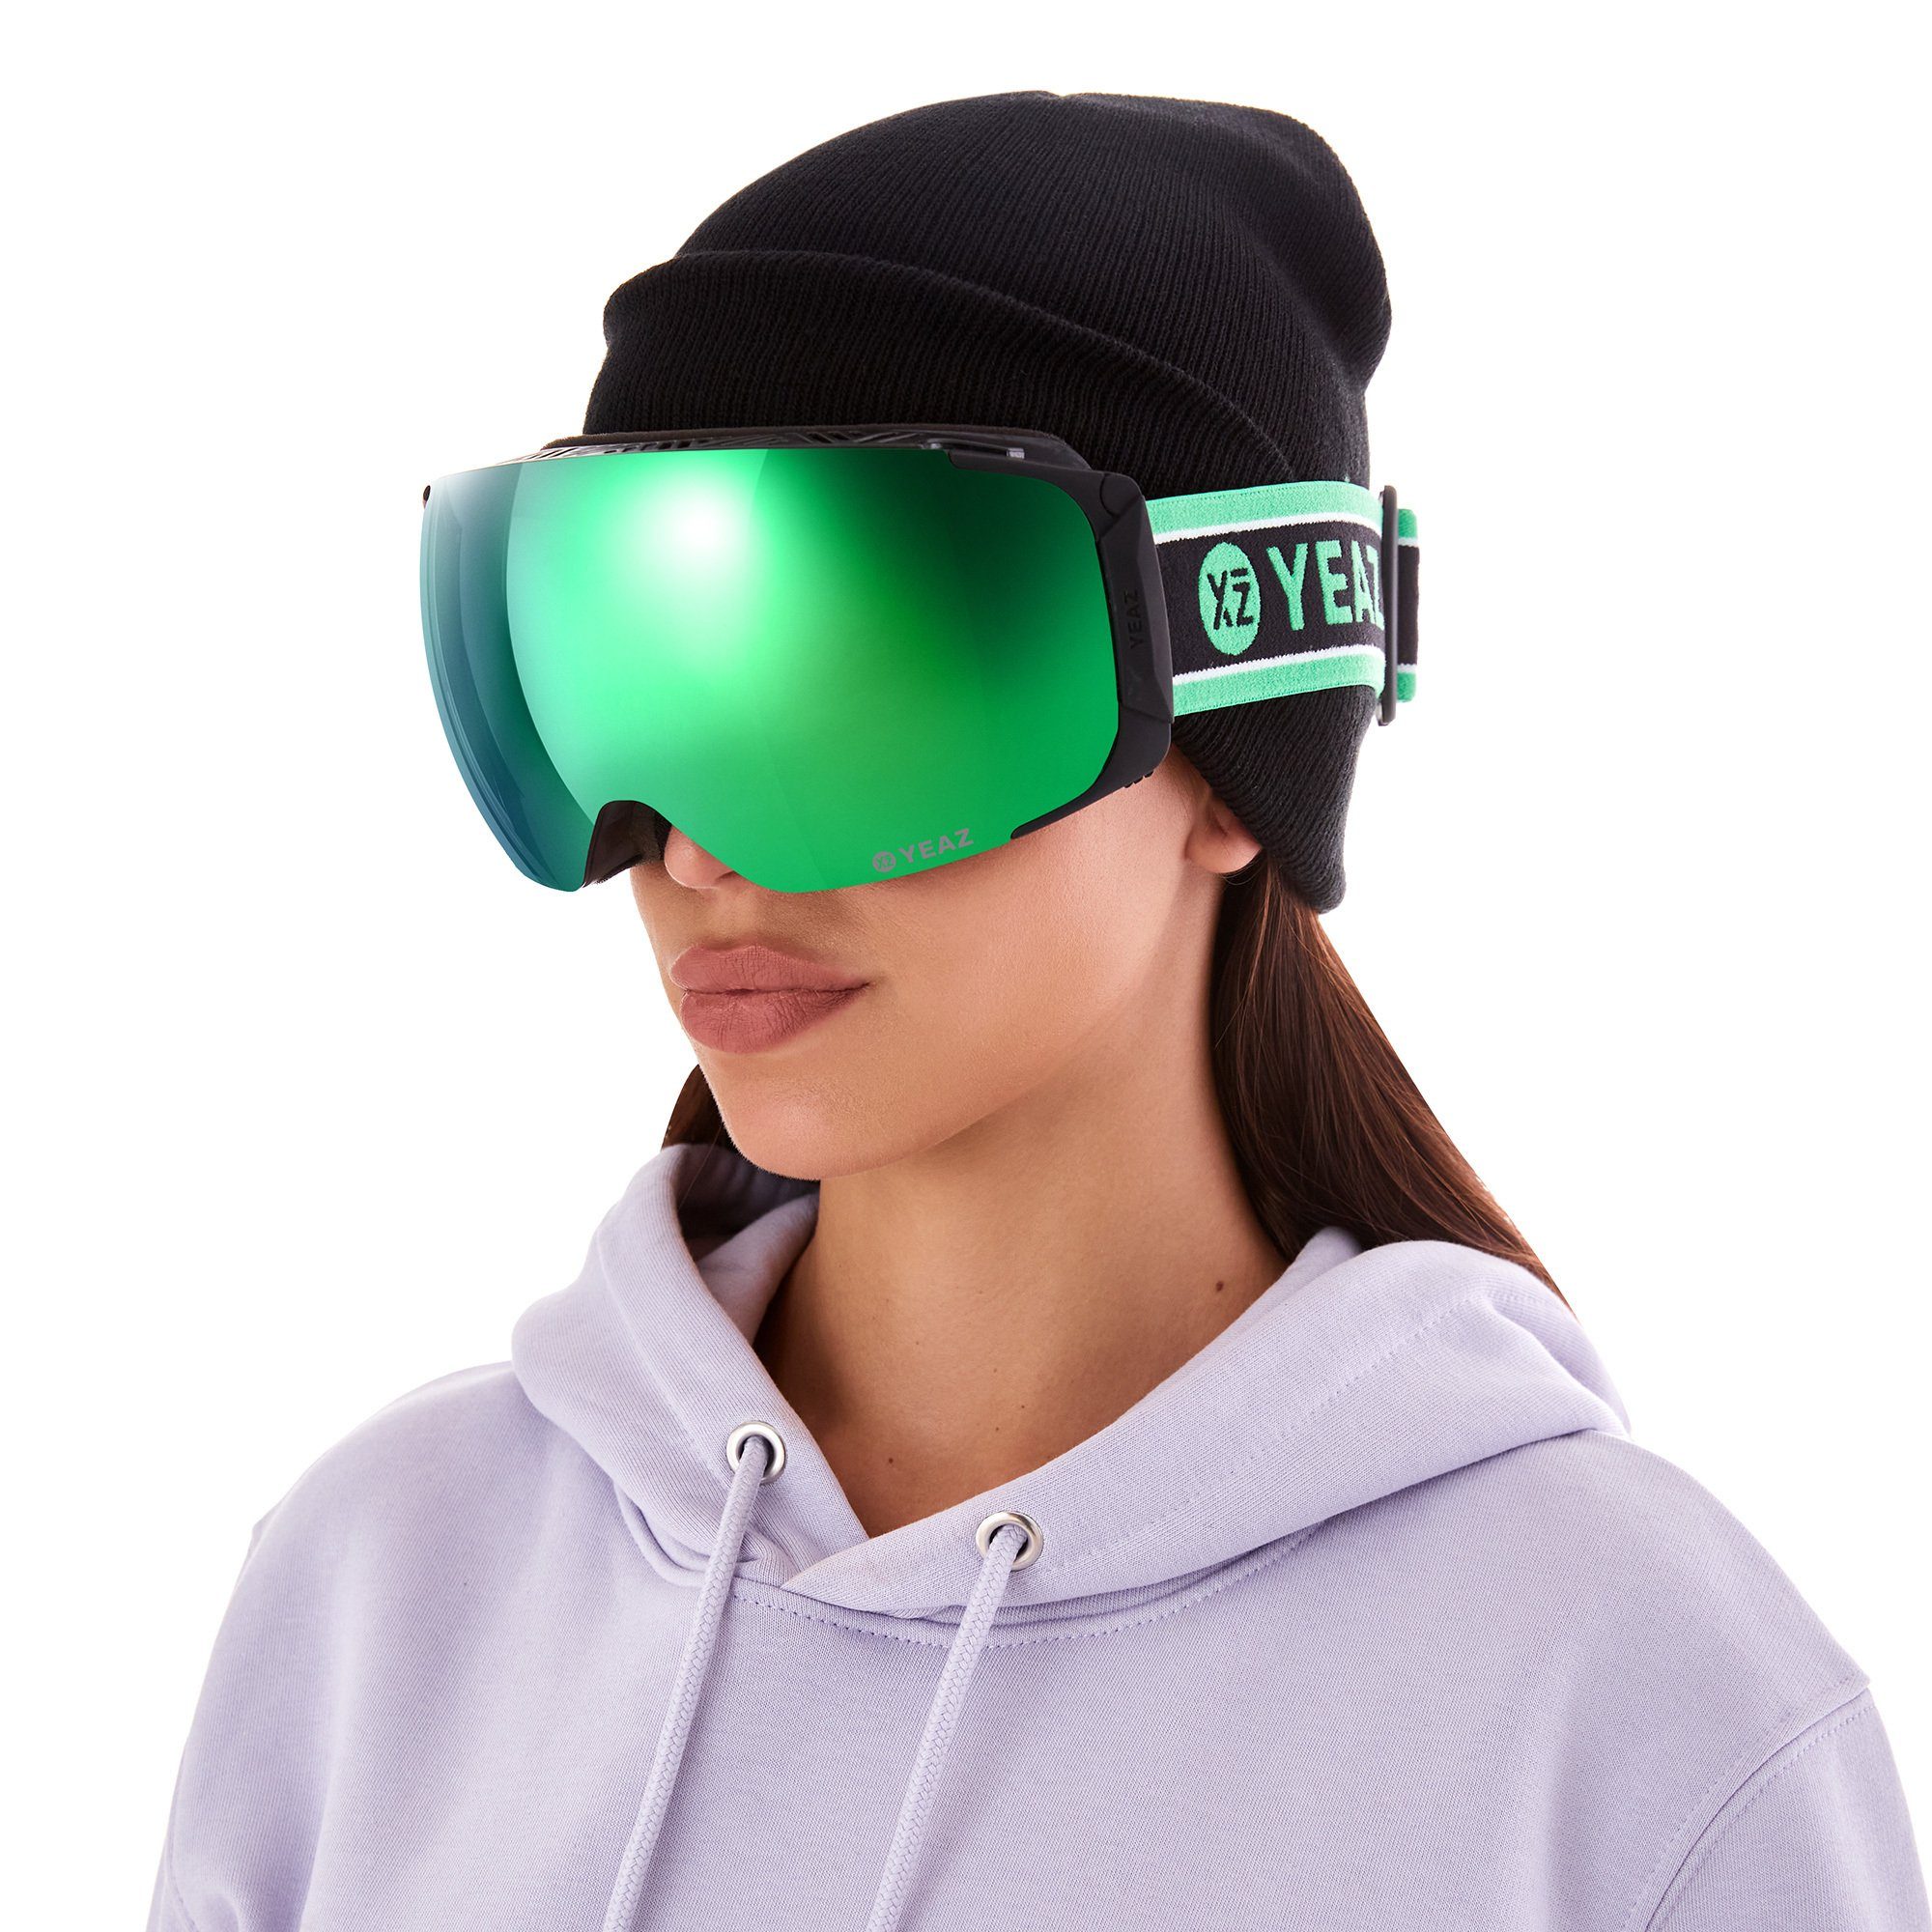 und snowboard-brille, Jugendliche TWEAK-X und Skibrille ski- für Erwachsene und Premium-Ski- YEAZ Snowboardbrille